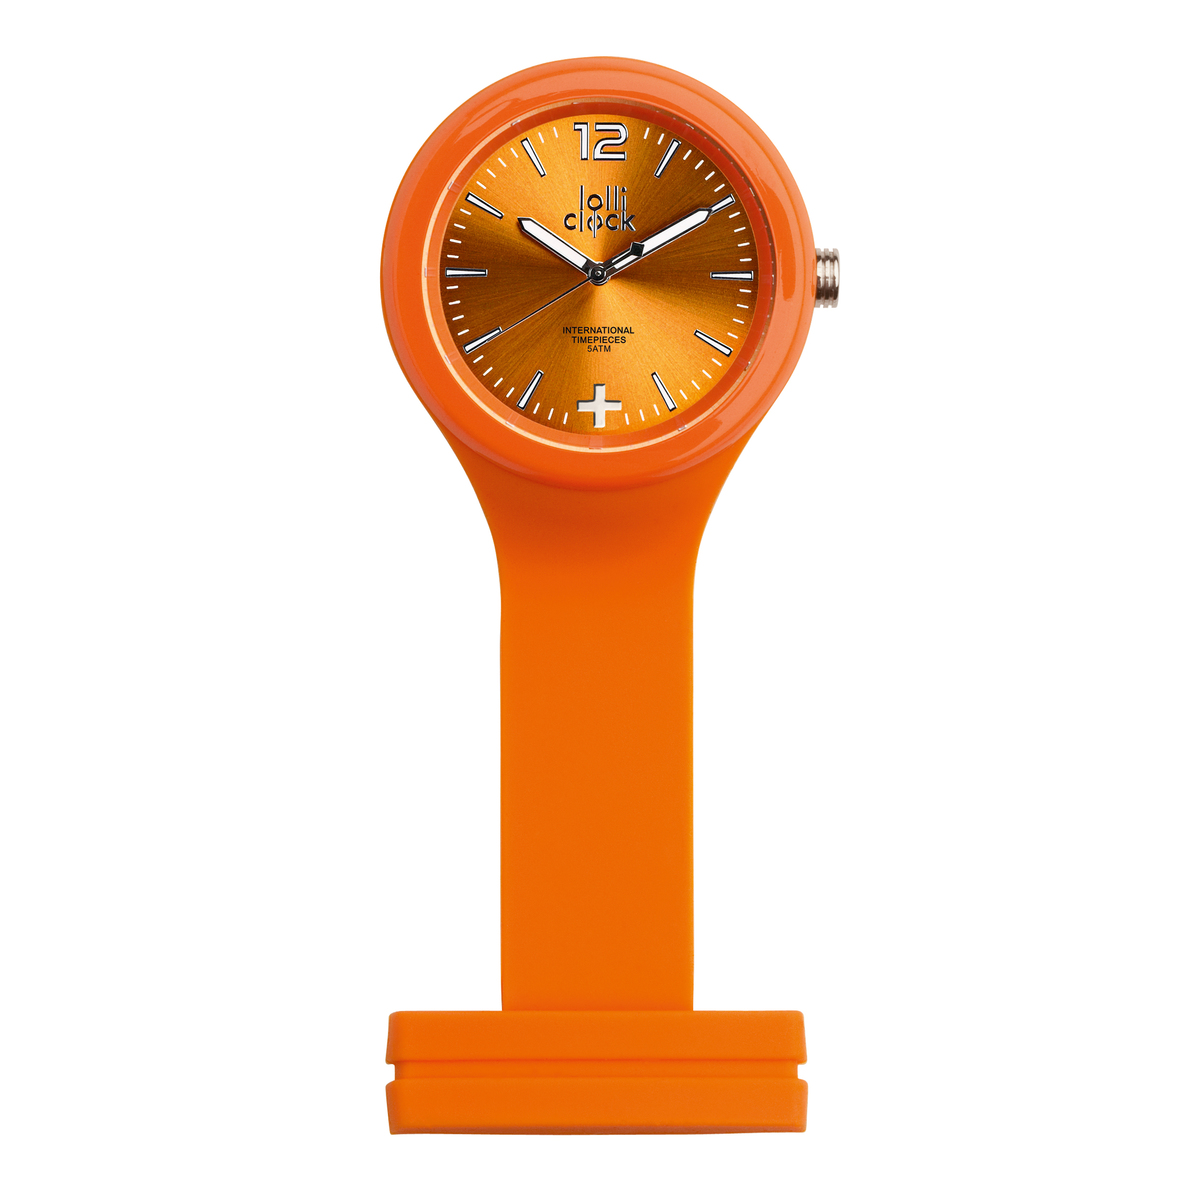 LM Uhr LOLLICLOCK-CARE ORANGE orange